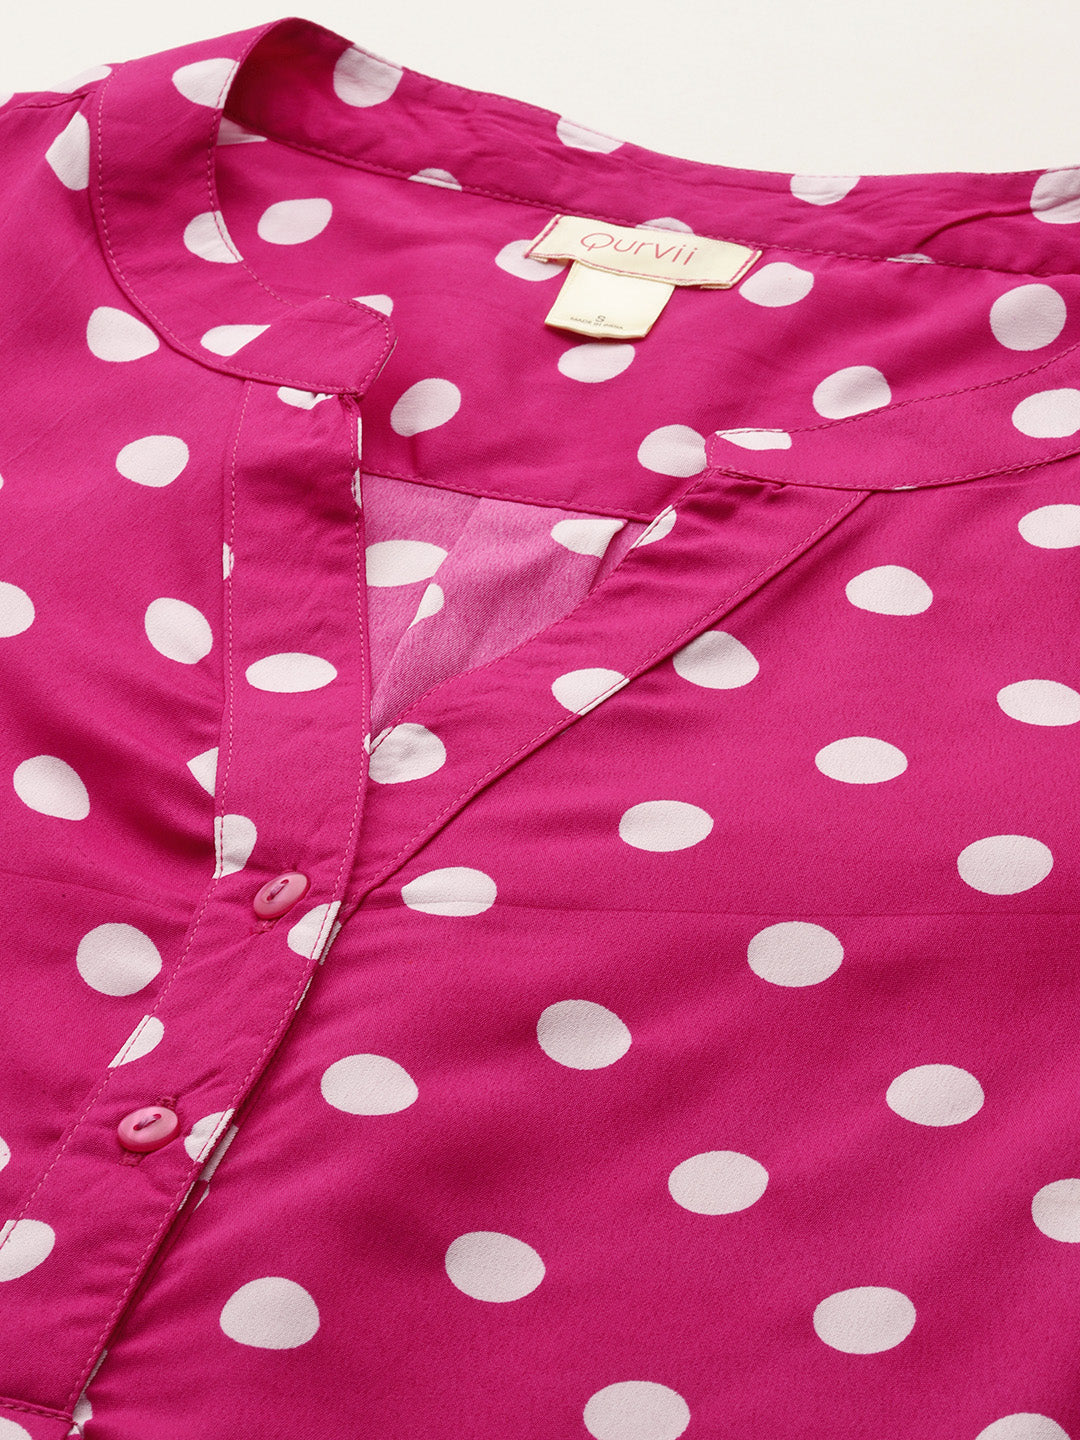 Hot pink and white polka dot shirt